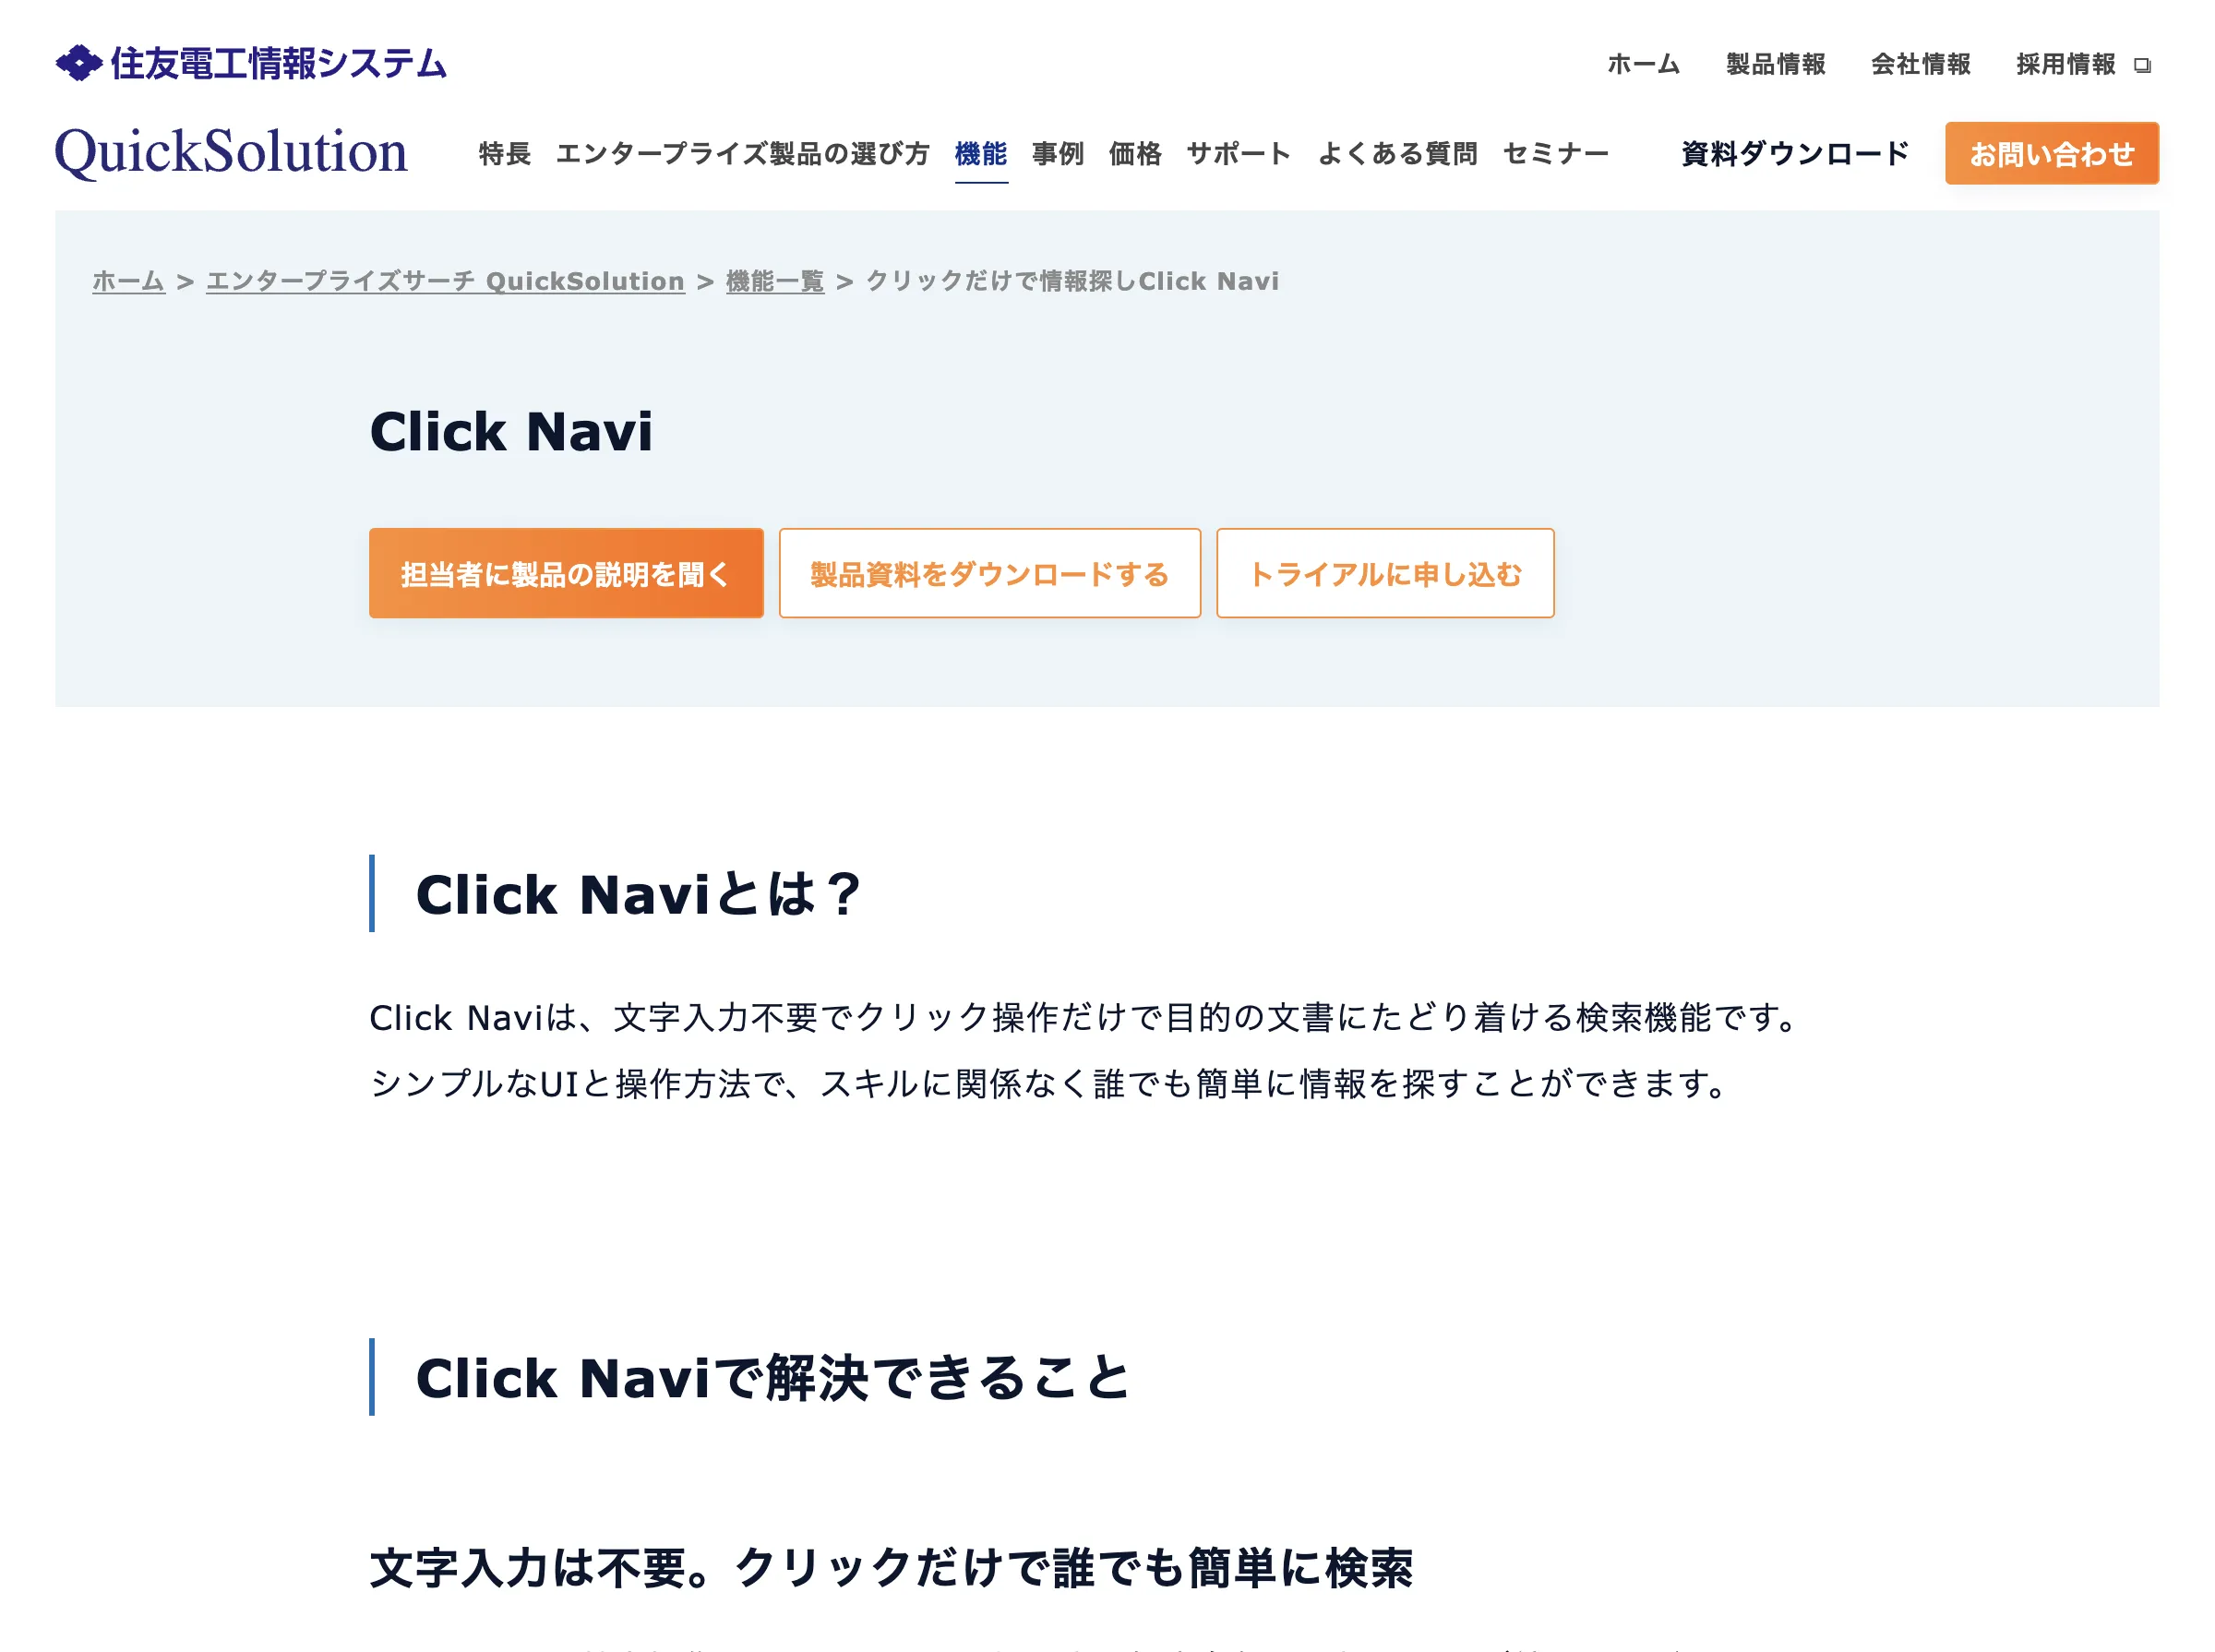 Click Navi(住友電工情報システム株式会社)